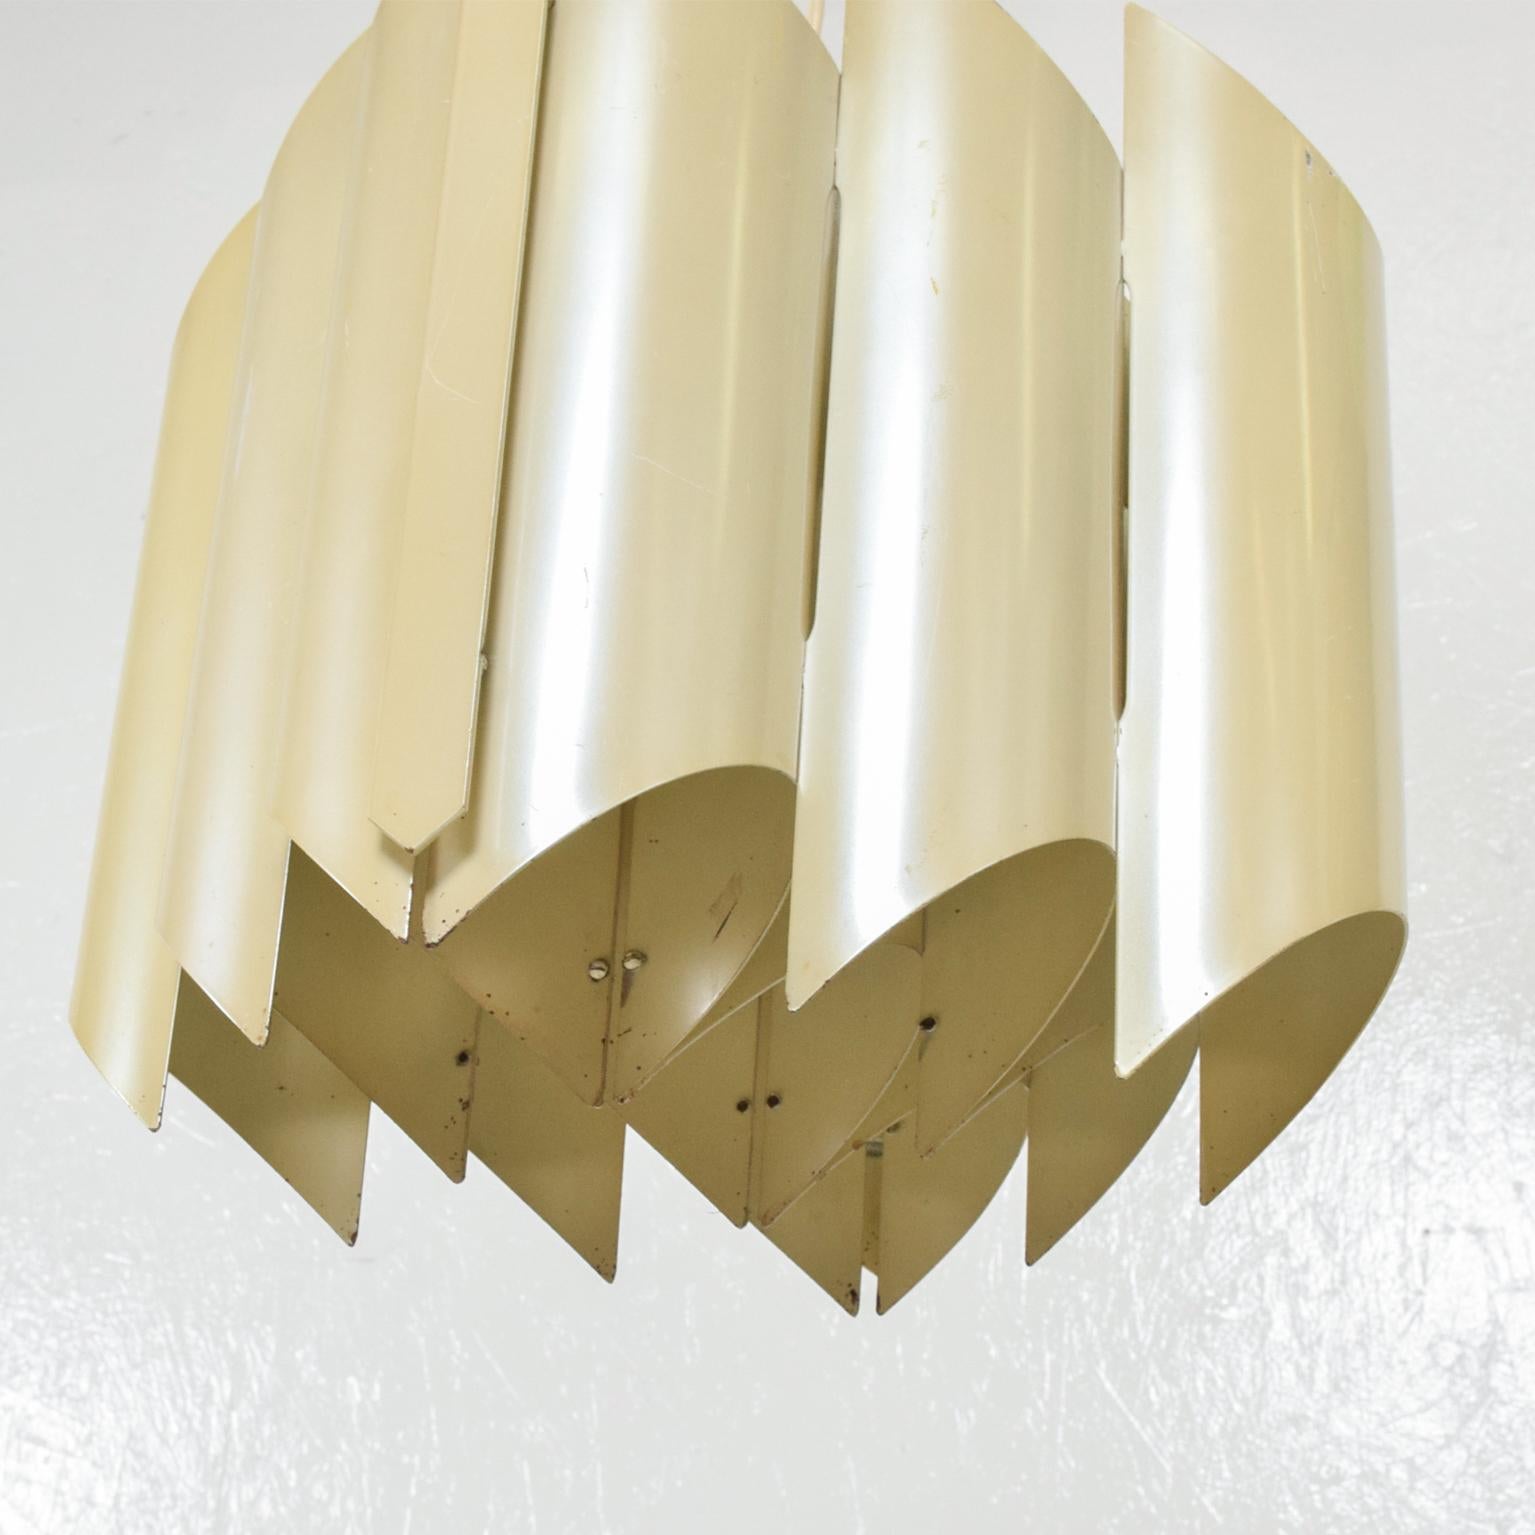 Mod Stilnovo Design Shield Chandelier Pendant in Aluminum Italy 1960s For Sale 2